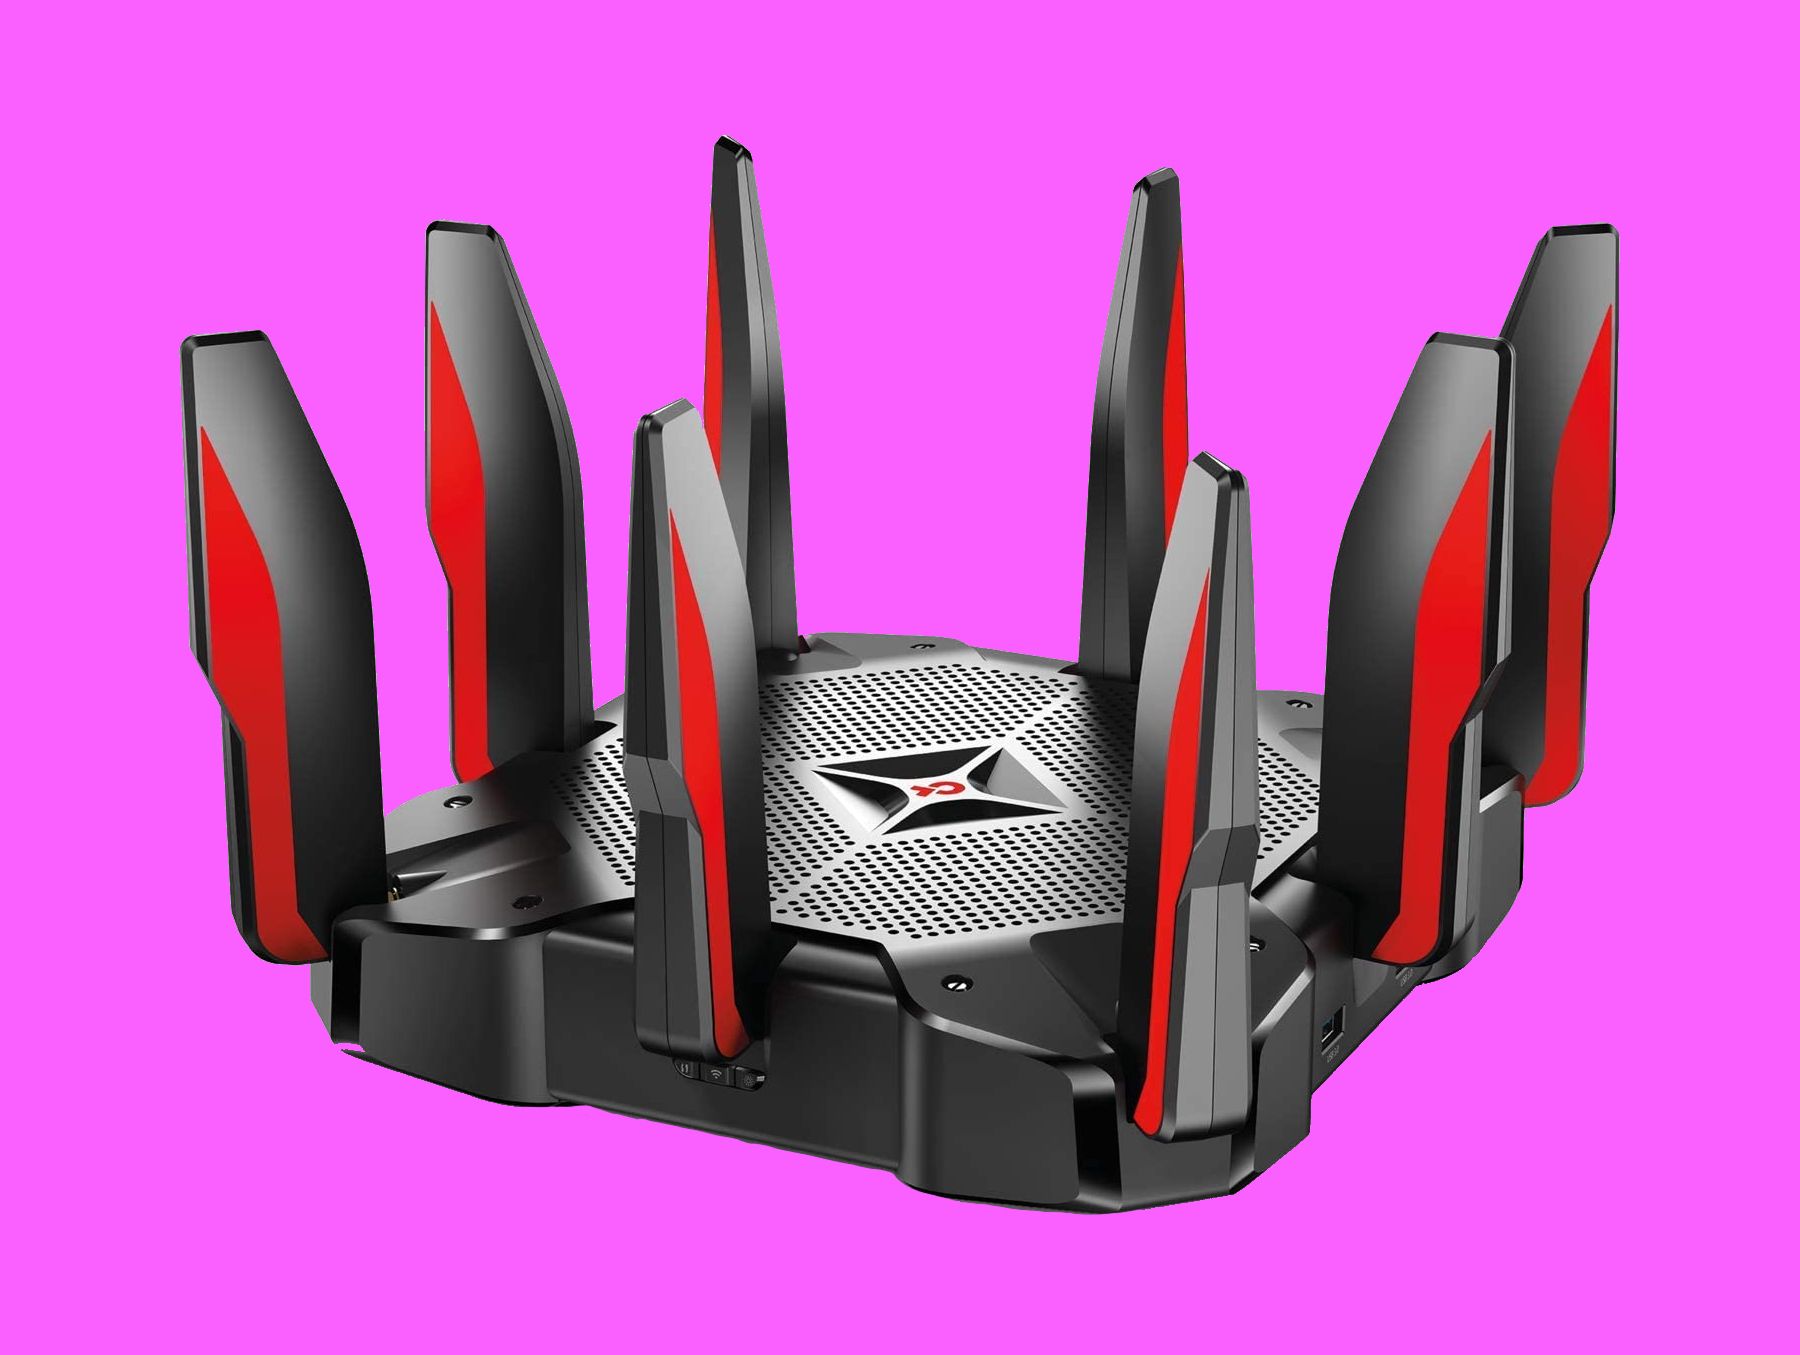 tp link archer c5400x router - I 5 migliori marchi di router wireless da considerare